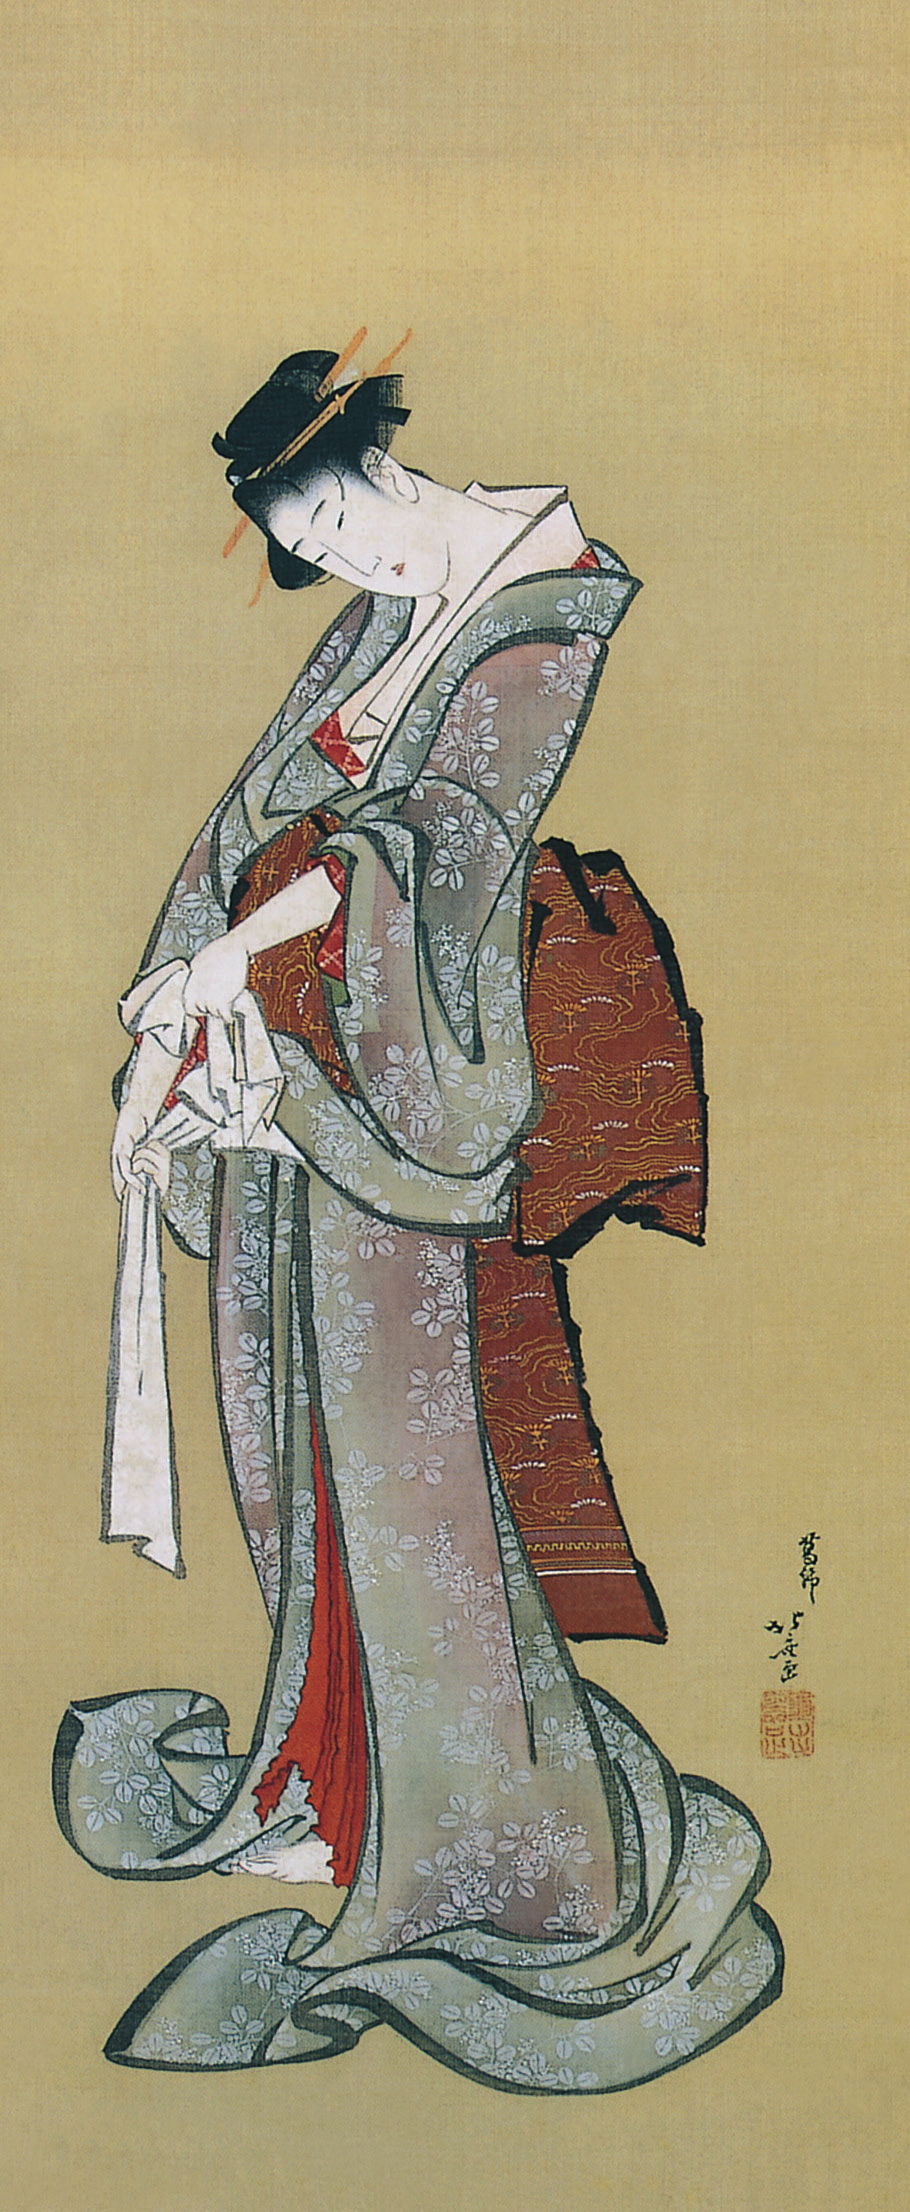 Một trong số các họa phẩm của Hokusai. Ảnh: Omega Plus cung cấp